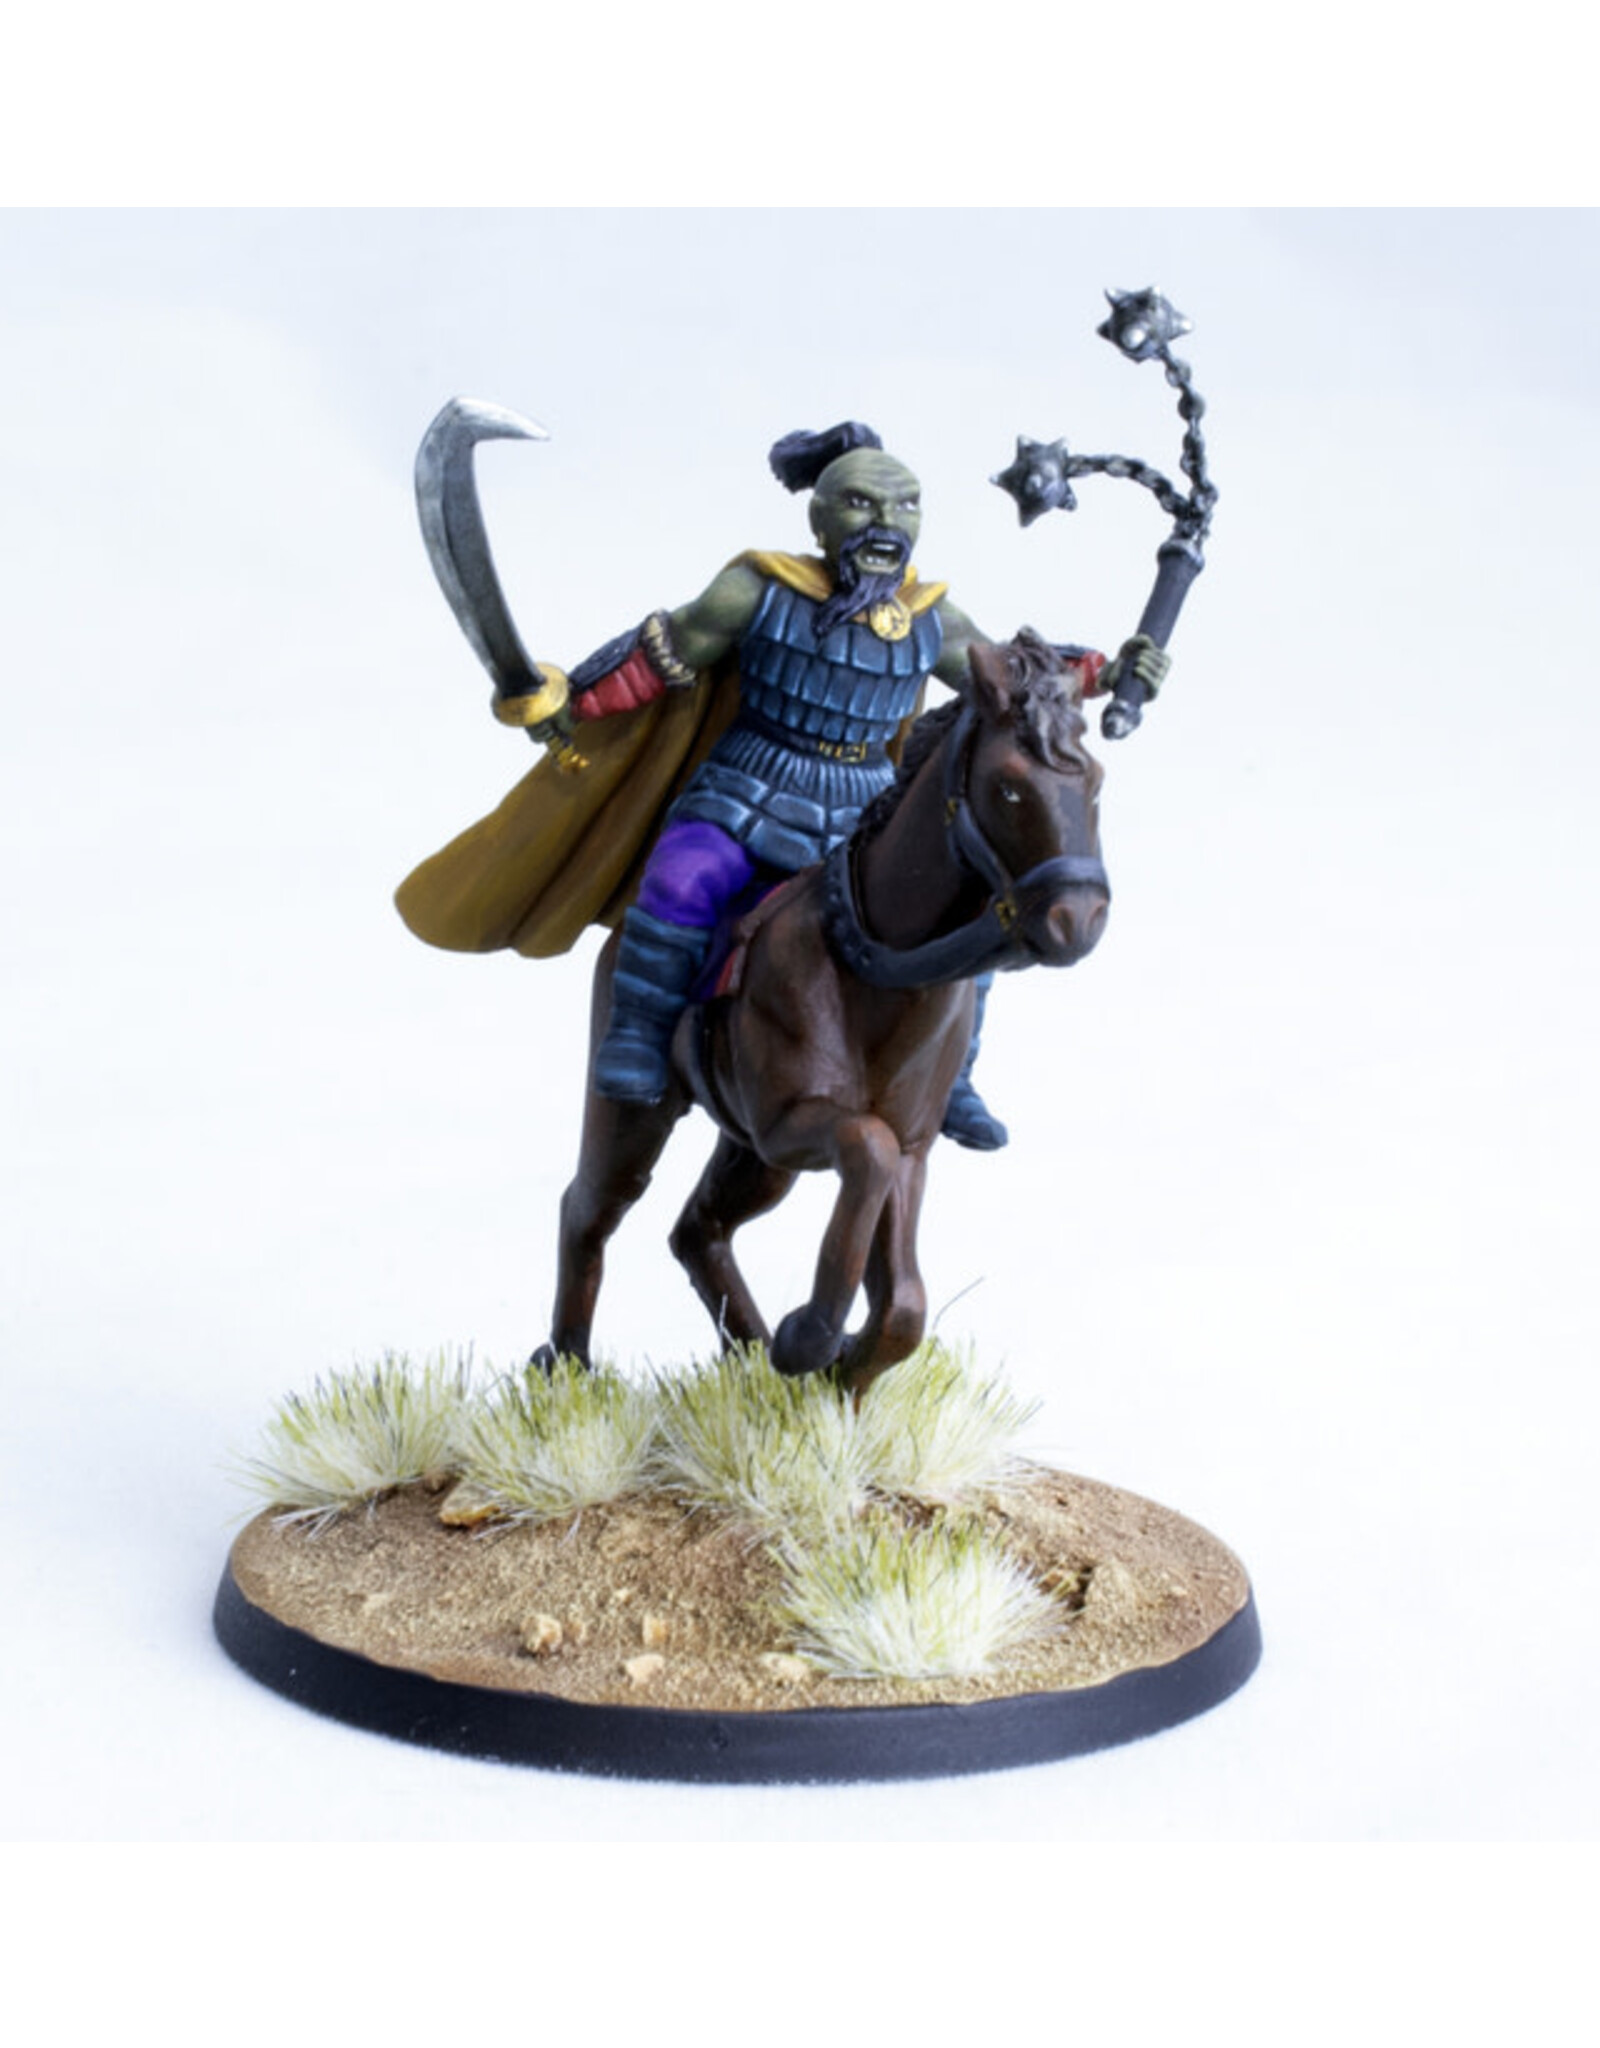 Kor-Khan, Mounted